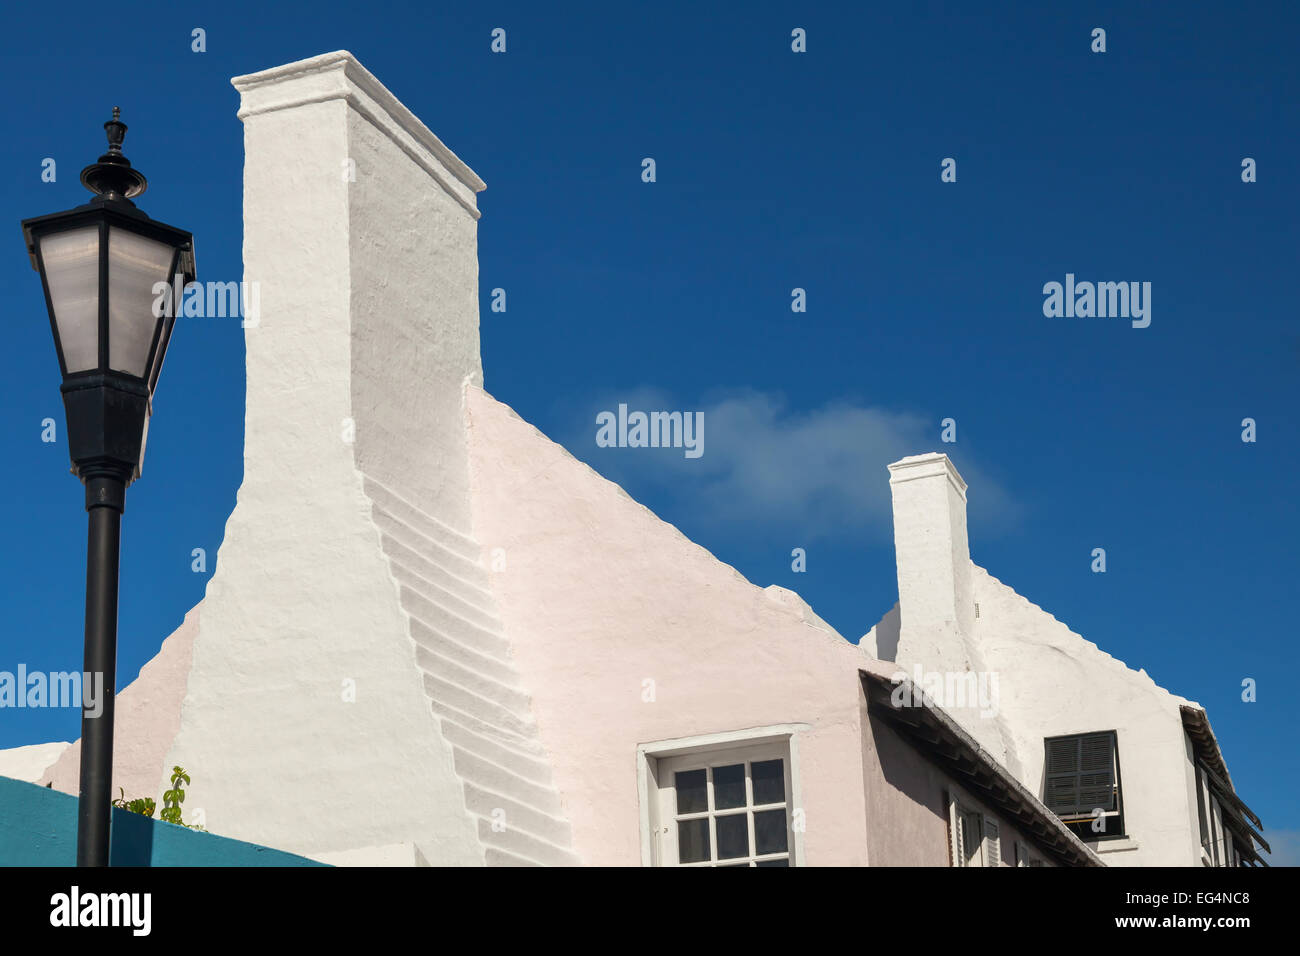 Unique Bermuda architecture of historic homes. Stock Photo